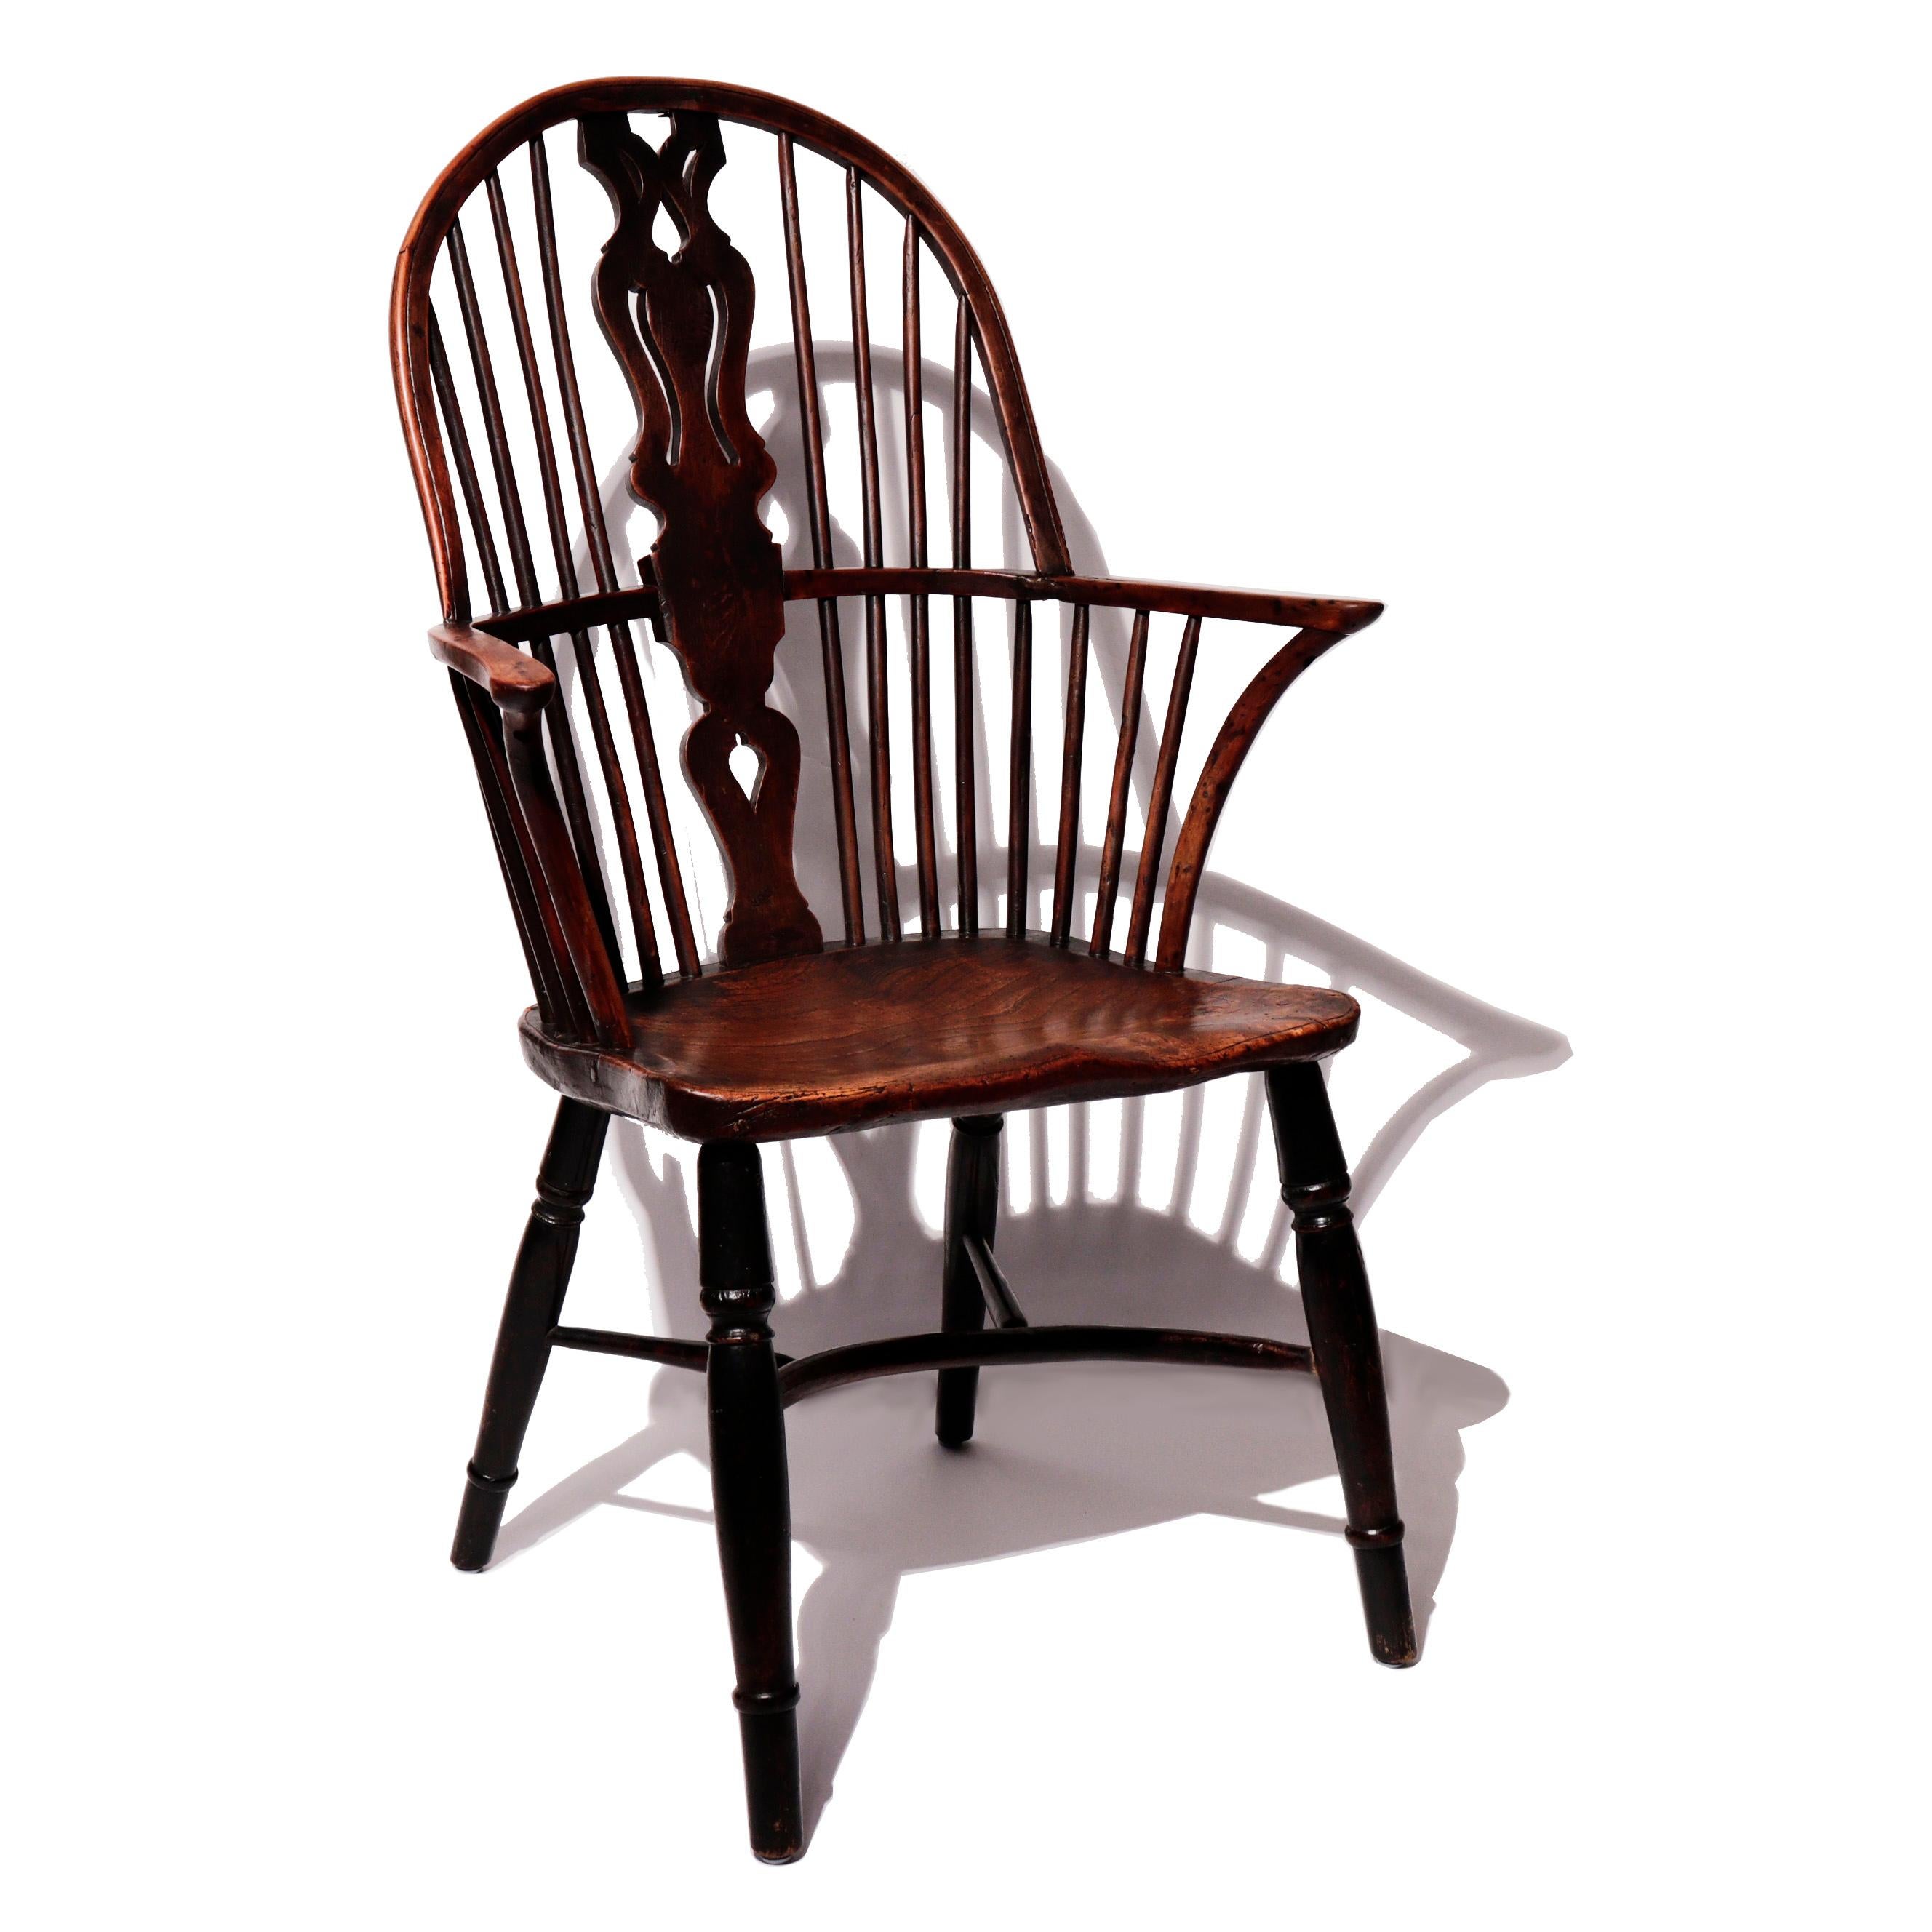 Antiker englischer georgianischer High Windsor Armlehnstuhl, der konturierte Sattelsitz mit reich gemasertem Ulmenholz, der Rest aus Eibe gefertigt, gedrechselte Balusterbeine, die durch eine Krinolinenstreckung verbunden sind, ein großer und gut